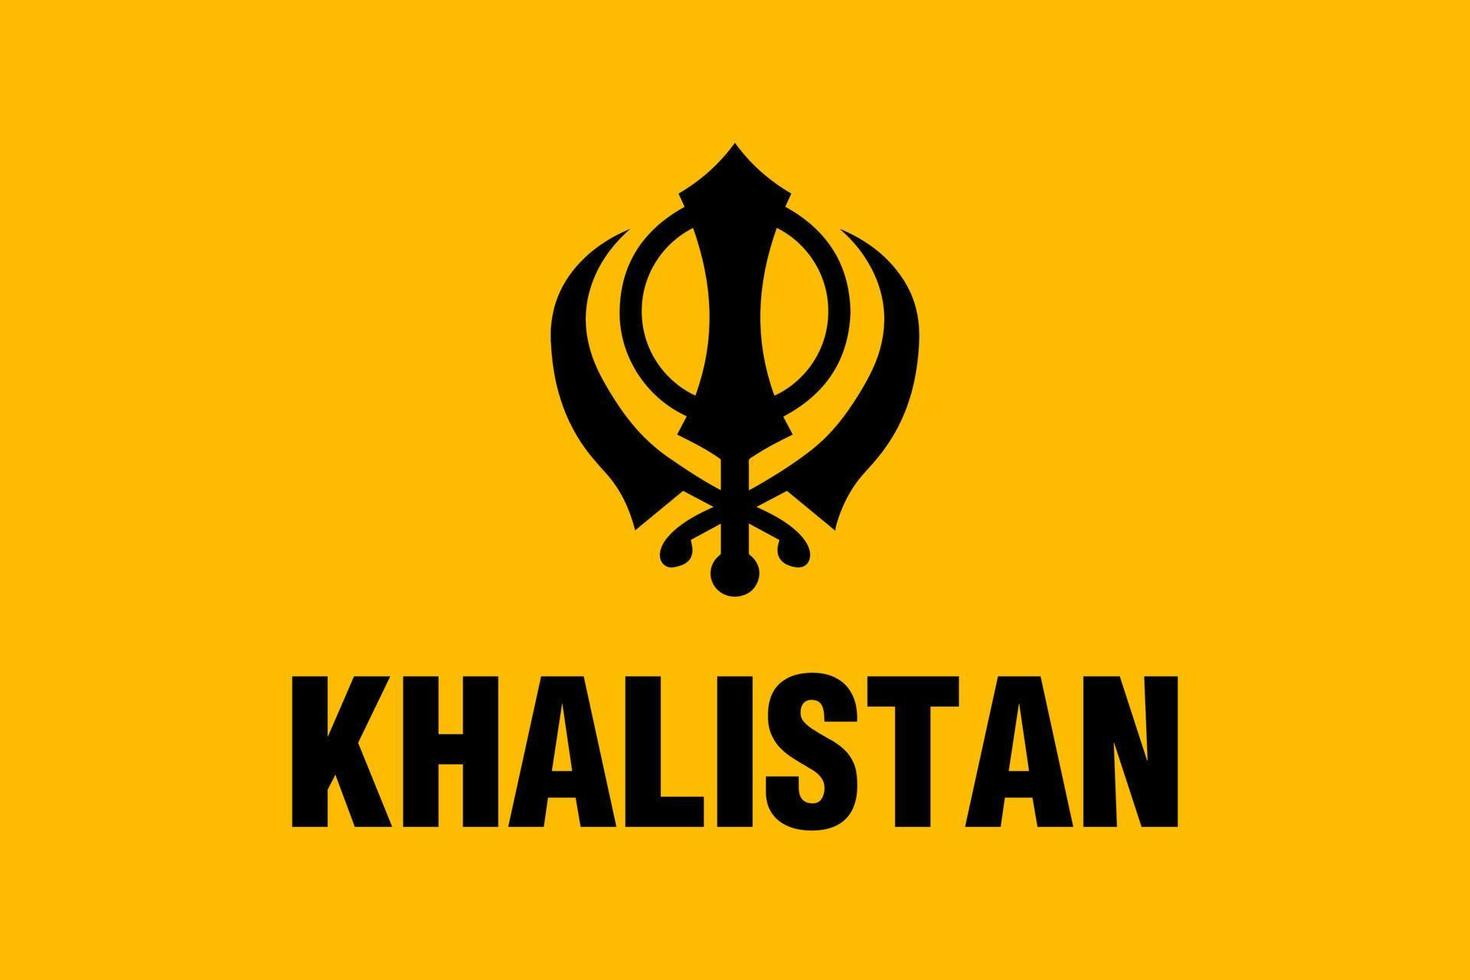 bandera de Khalistán con un símbolo sagrado sij. algunas personas indias punjabi sikh quieren un nuevo país independiente cuyo nombre será khalistan y es una bandera inconstitucional vector